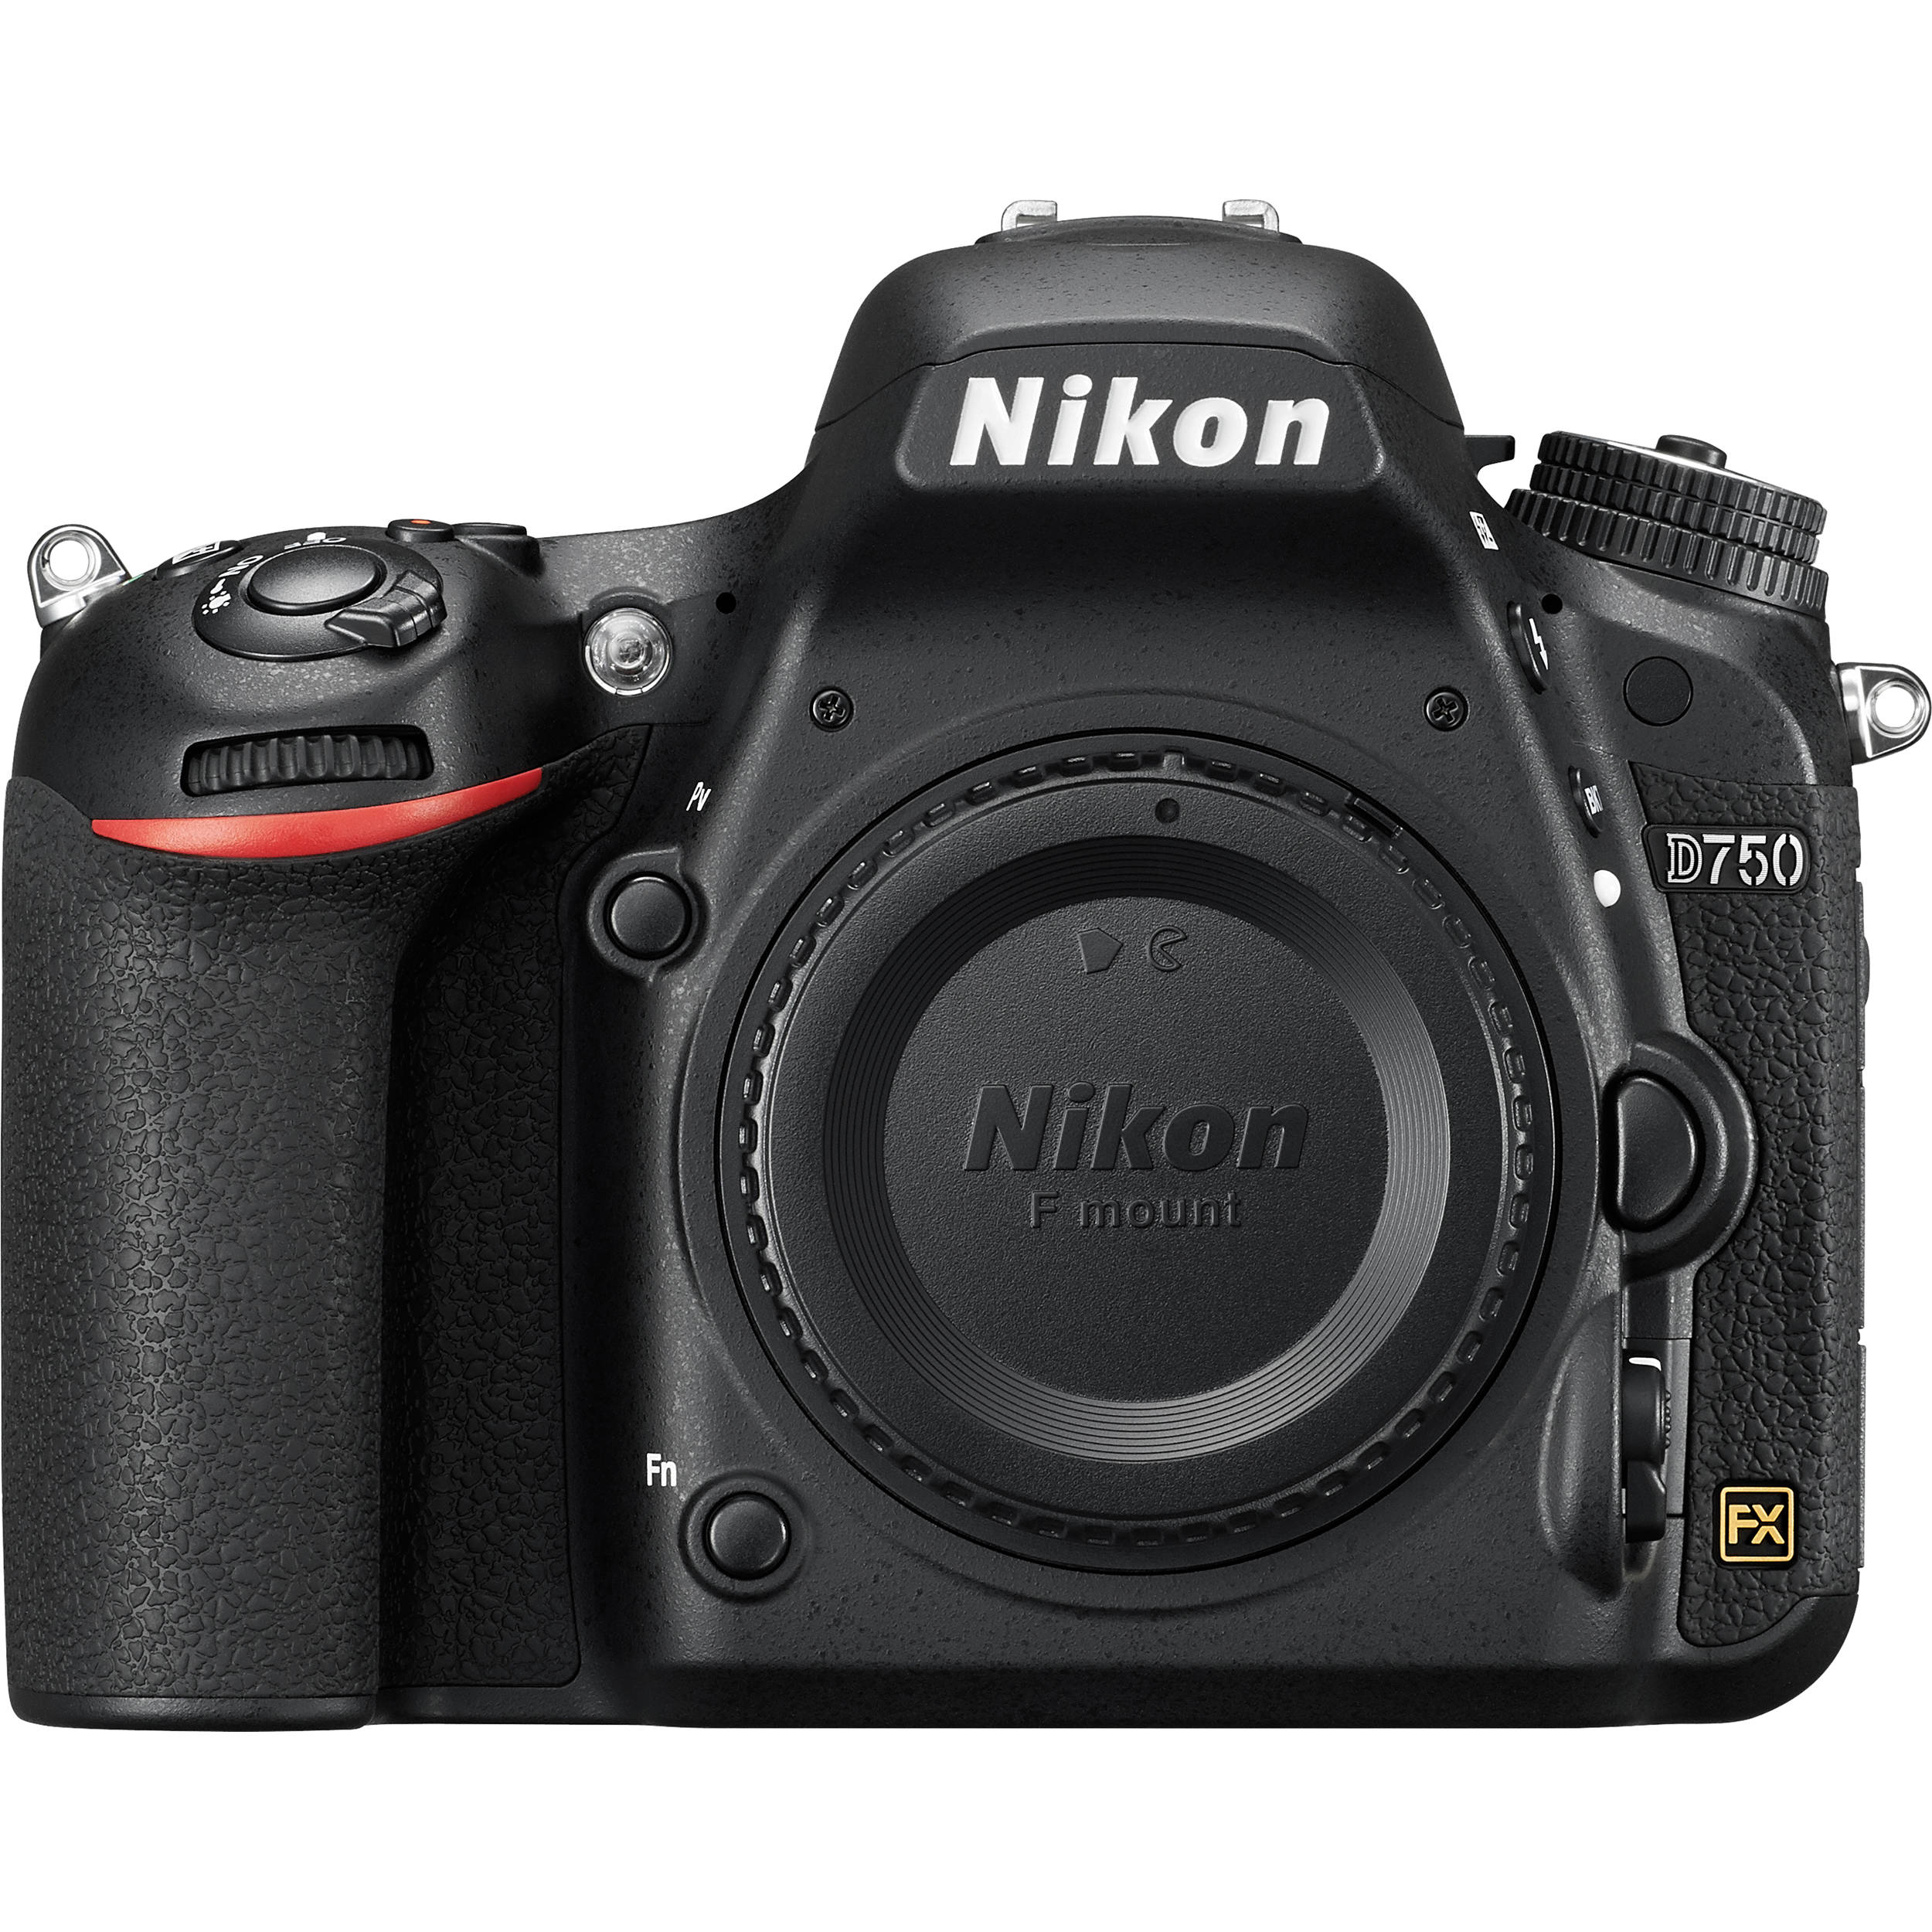 Nikon D750 24 MP Full Frame Digital SLR Camera Body Only